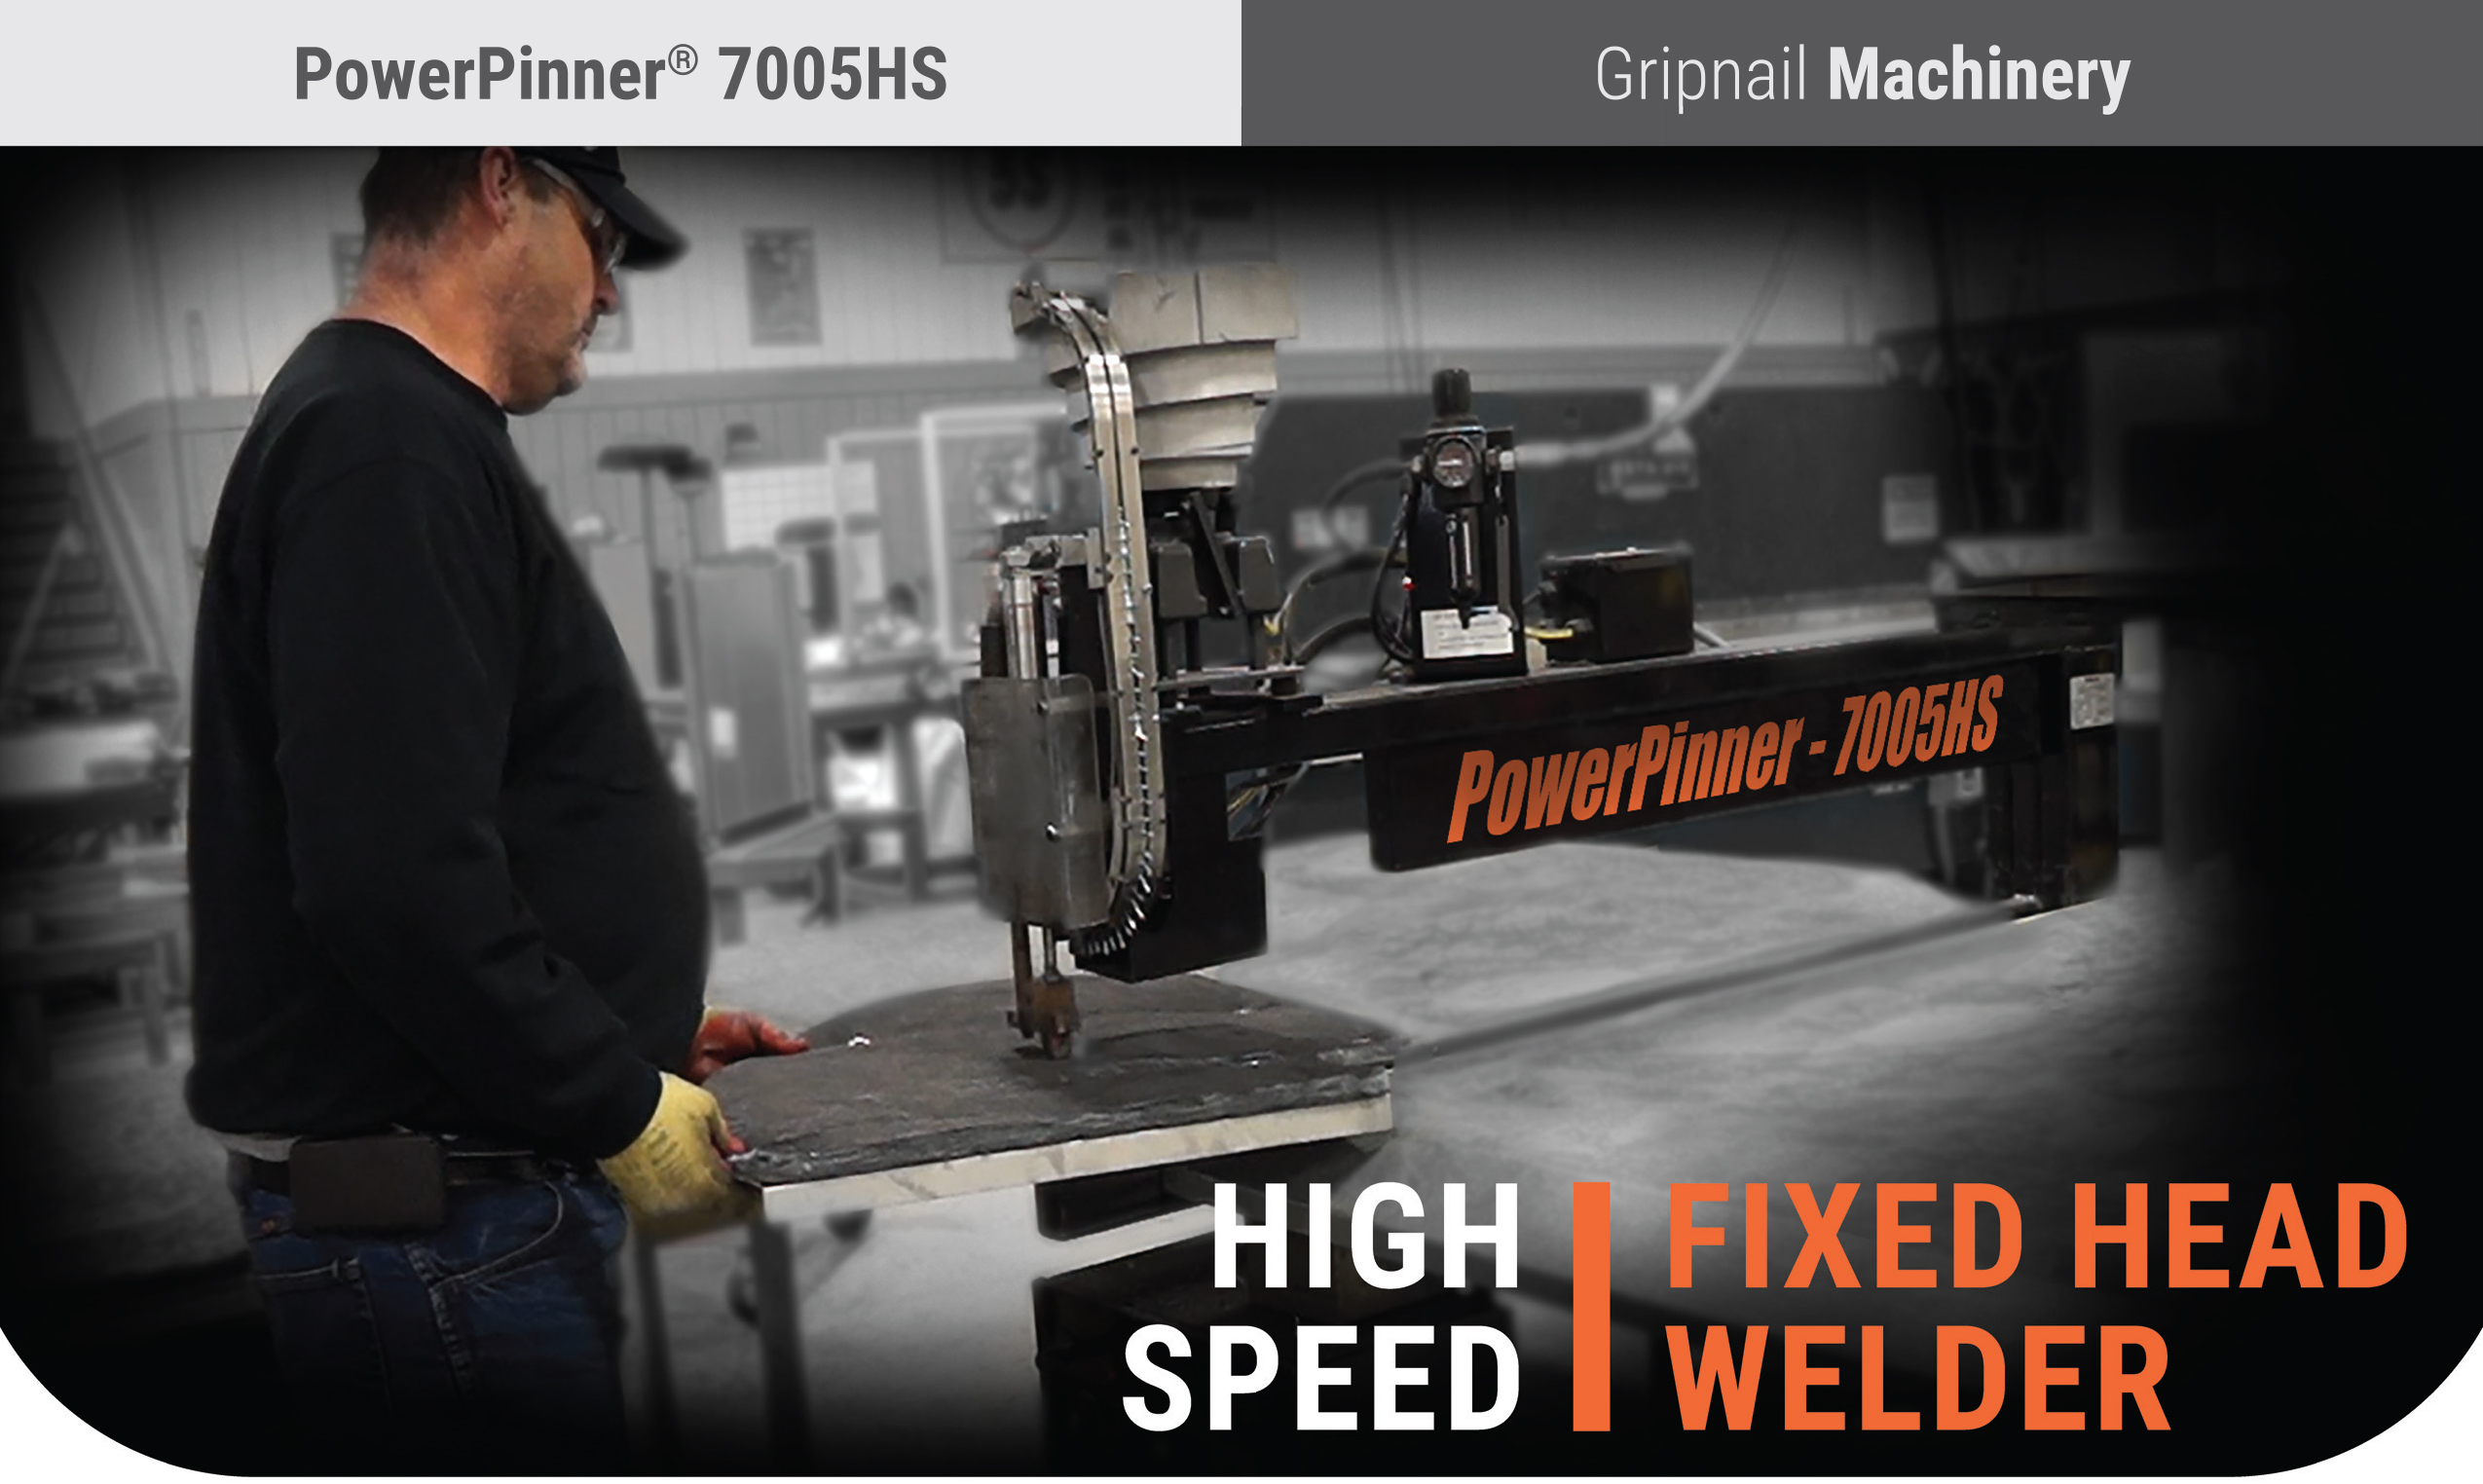 PowerPinner 7005HS (High Speed - Fixed Head Welder) Pin Spotter Main